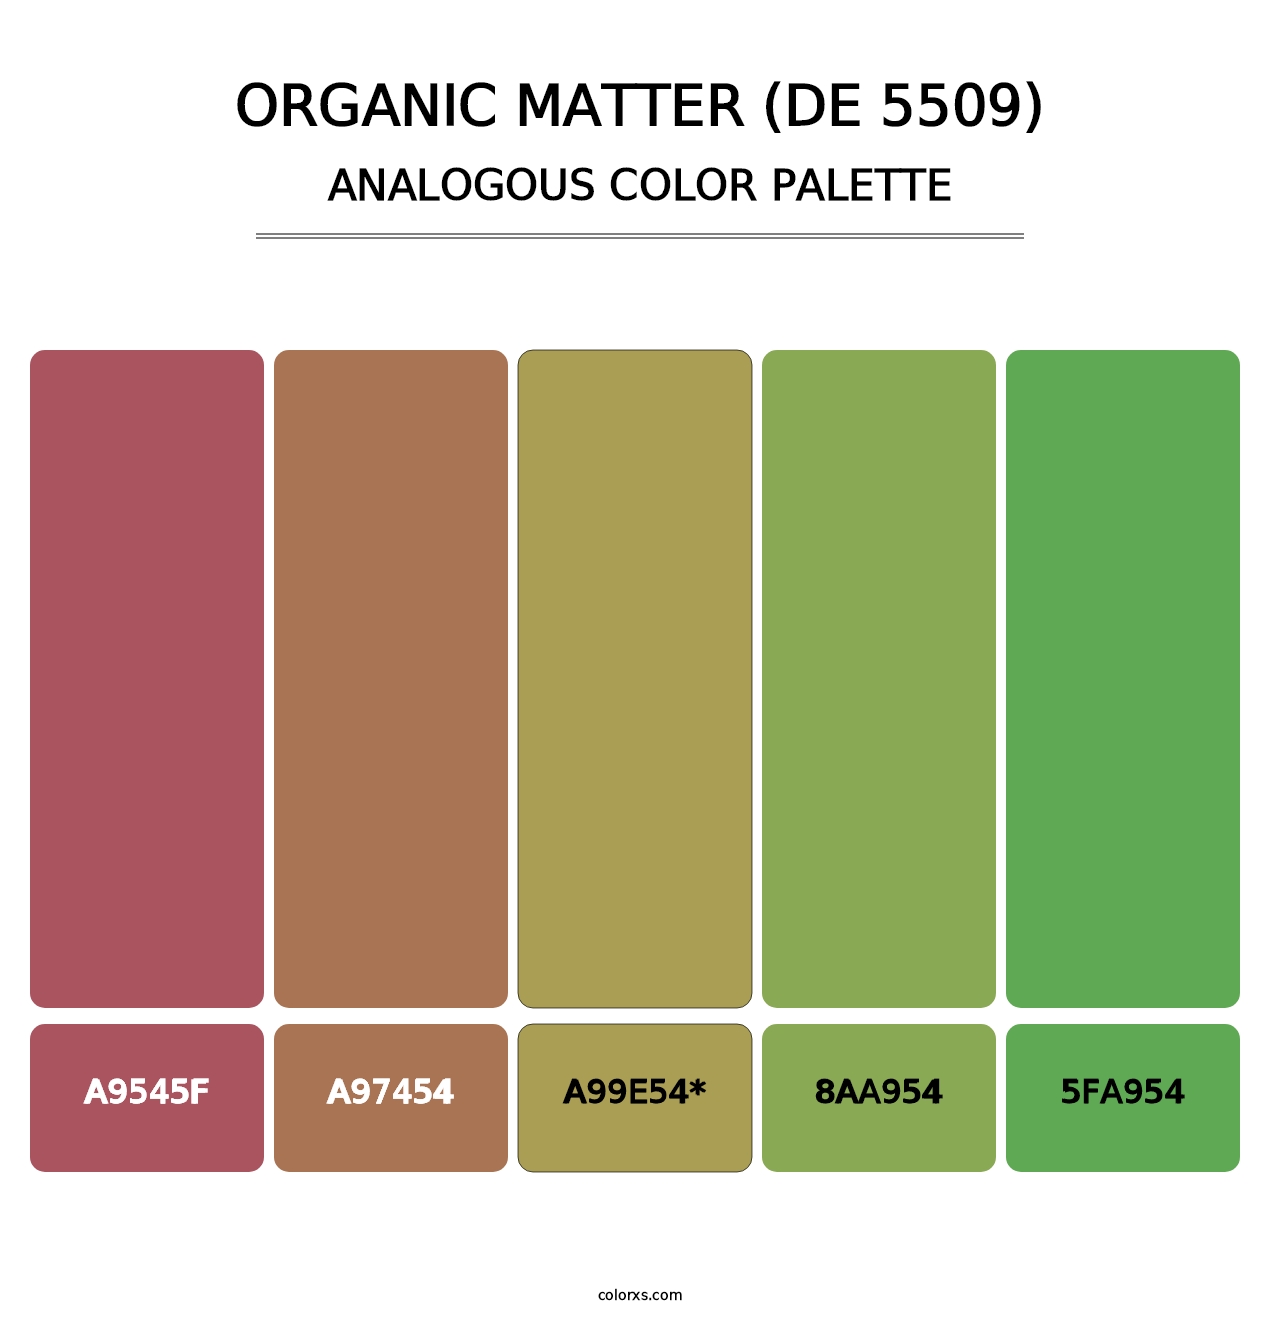 Organic Matter (DE 5509) - Analogous Color Palette